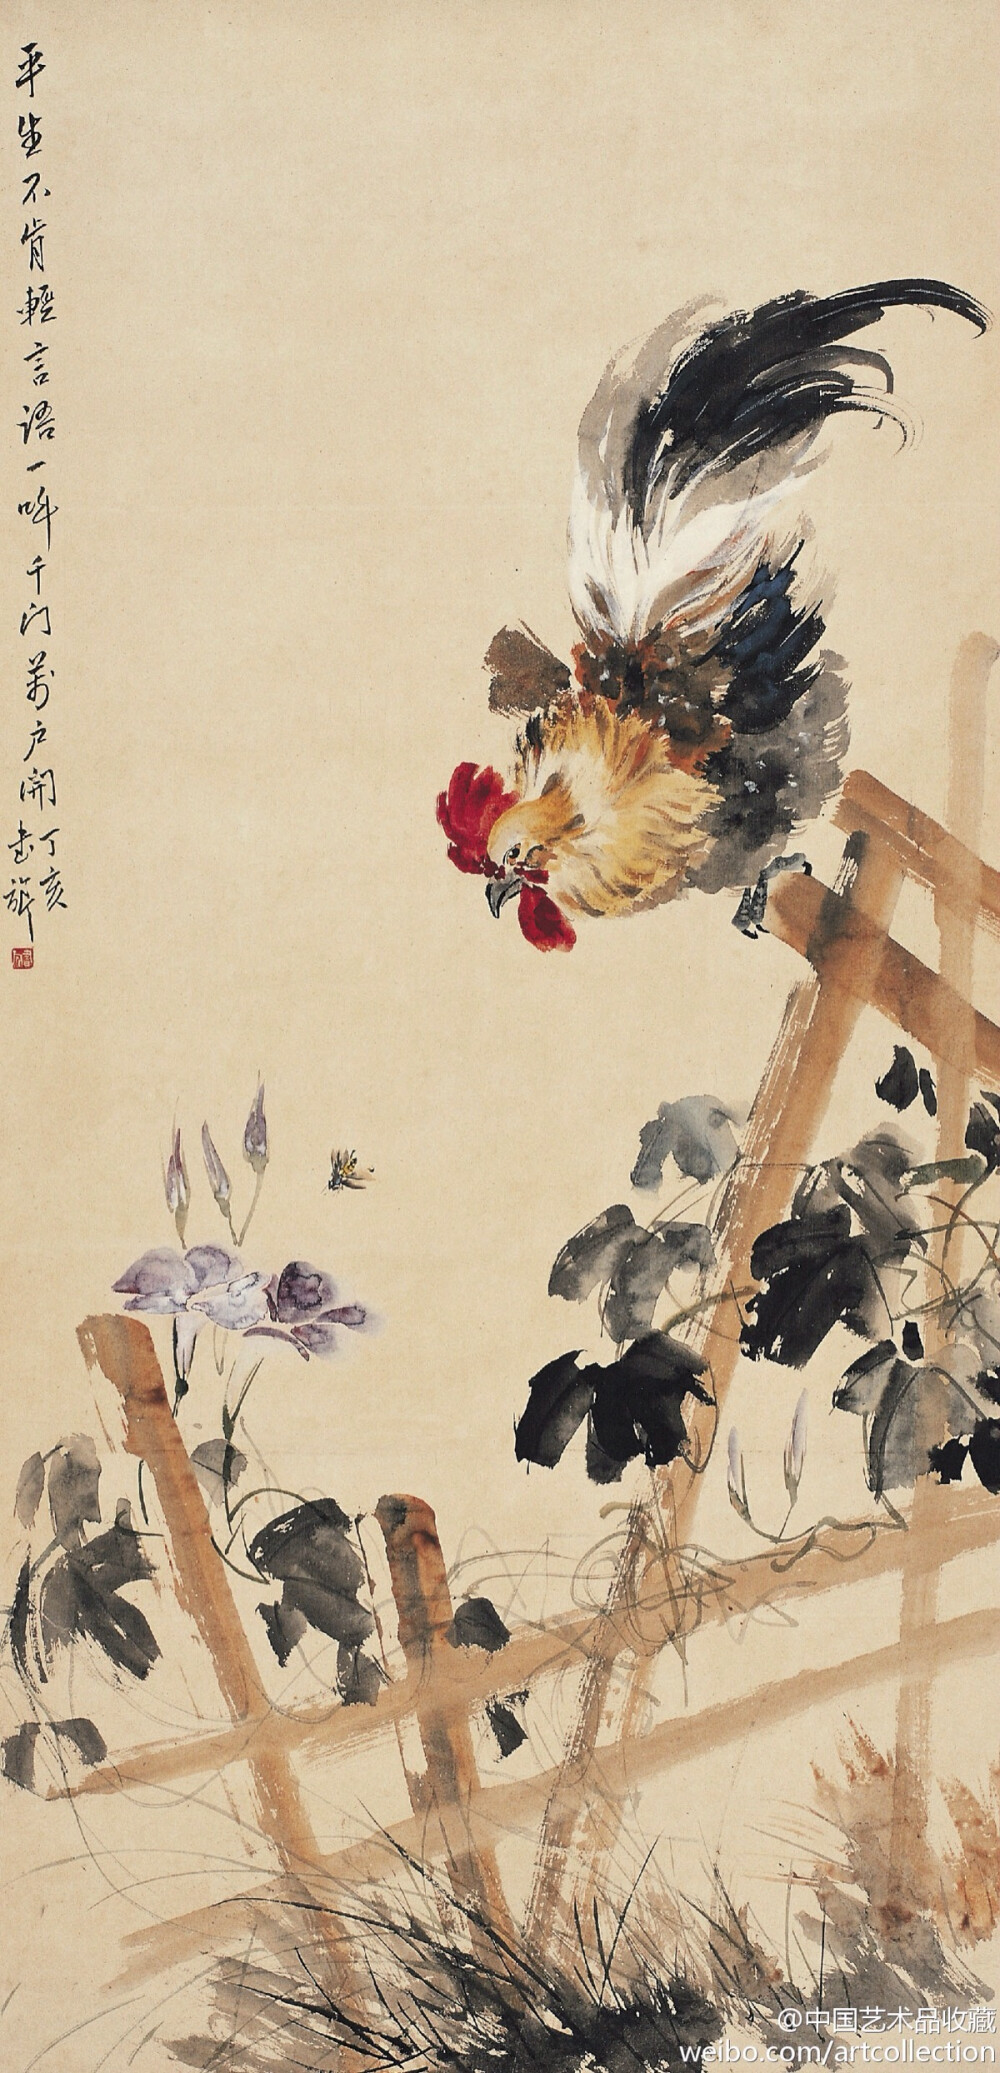 【 张书旂 《花鸟图》 】张书旂（1900-1957）的花鸟画，继承了中国画以形写神的传统创作方法。张书旂觉得师古人、师前人莫如师自然更生动。他每于清晨薄暮，蹲身秘处，窥视鸟儿之神态，故所作花鸟画，纯从写生中得来，动作的自然，色彩的正确，乃在写生之外，另有观察的工夫和心中意会的结果。